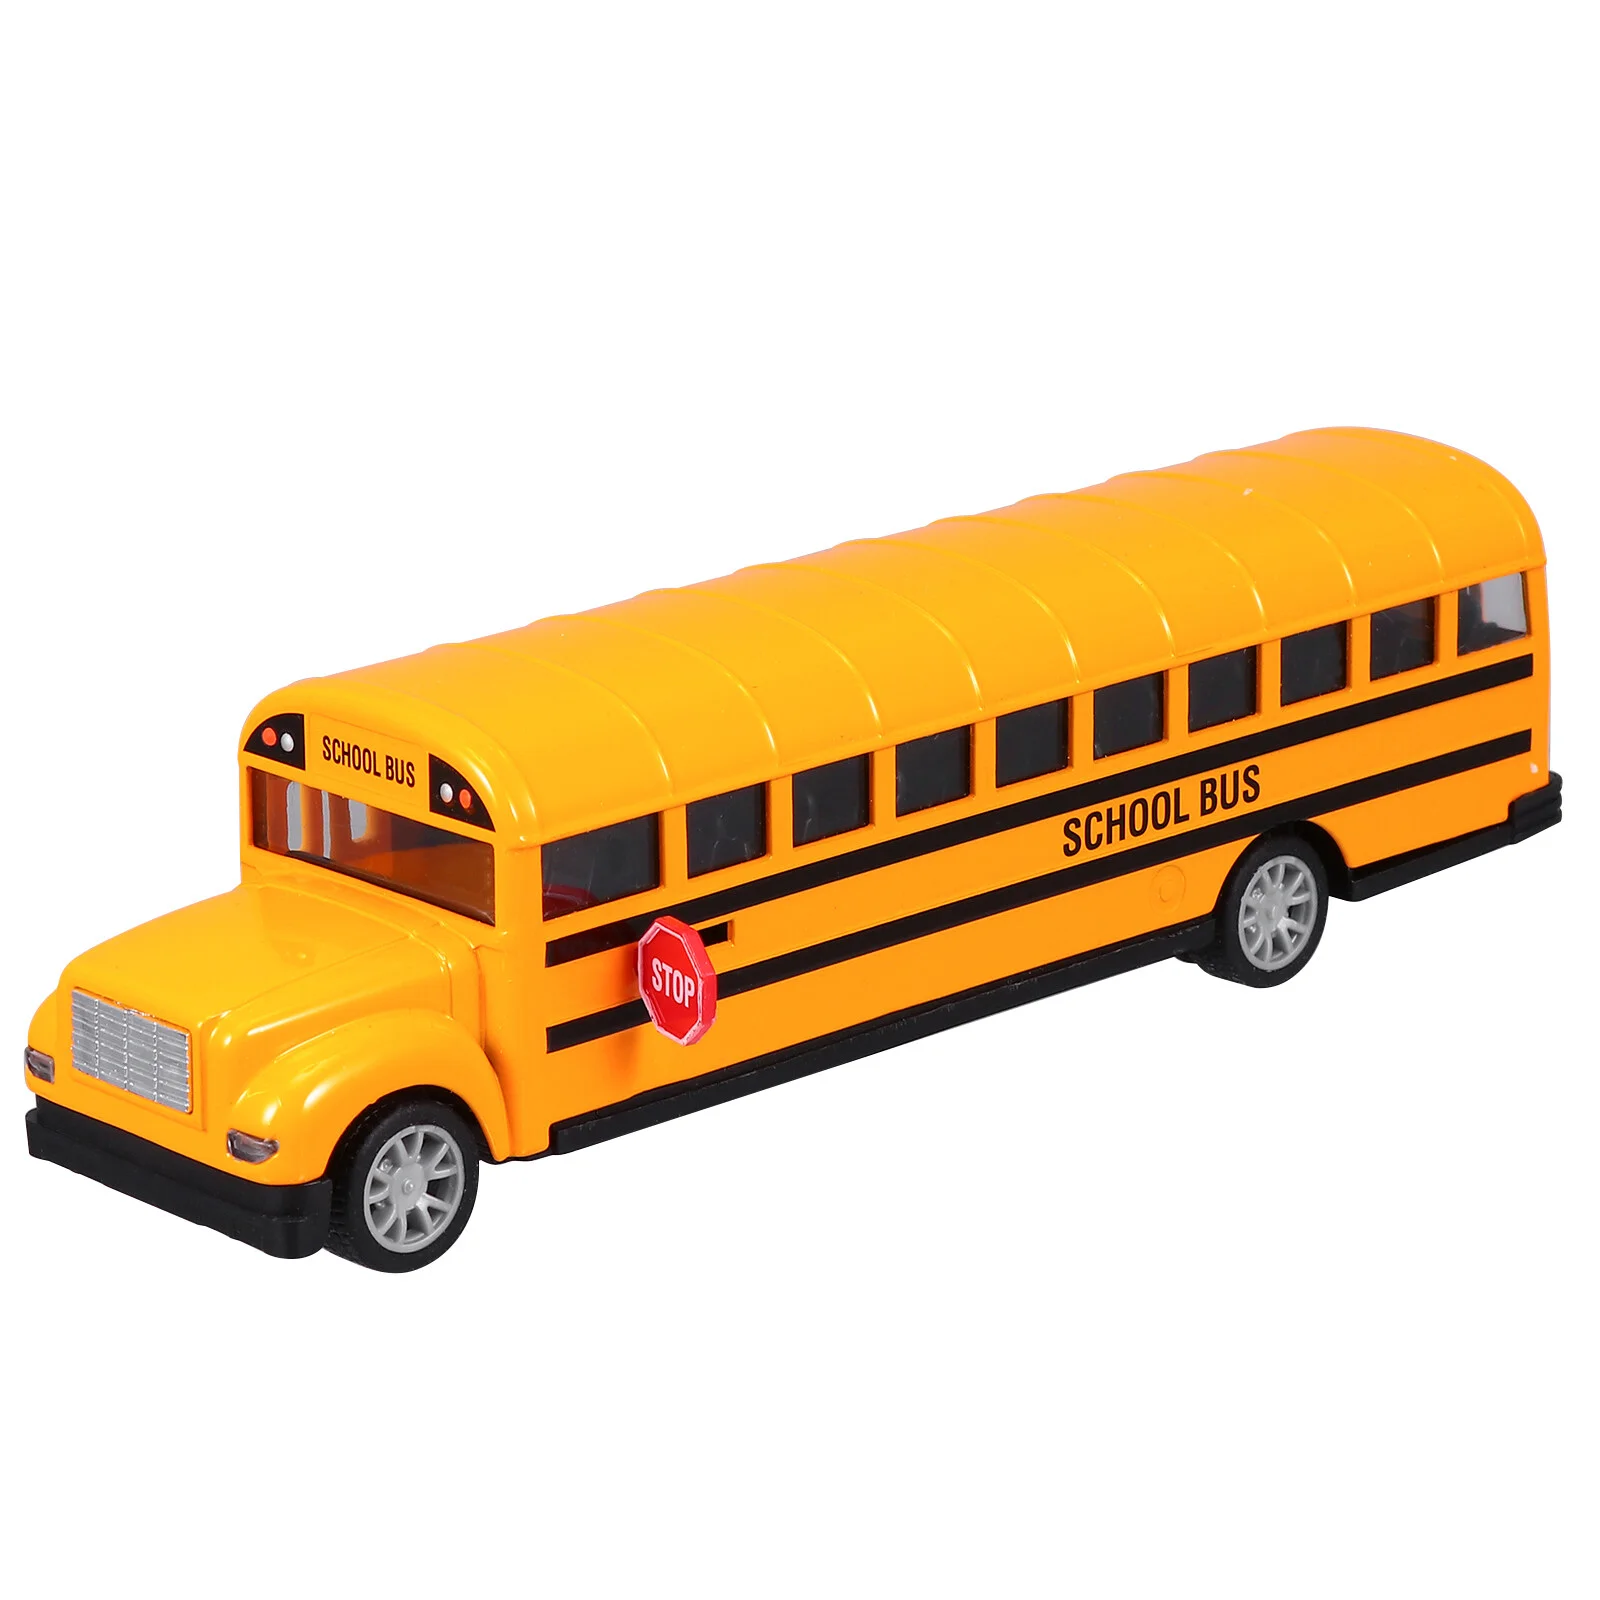 

Школьный автобус, задний детский автомобиль, карта, фрикционный внедорожник для корзины, наполнитель, детский подарок на день рождения (большой, 1: